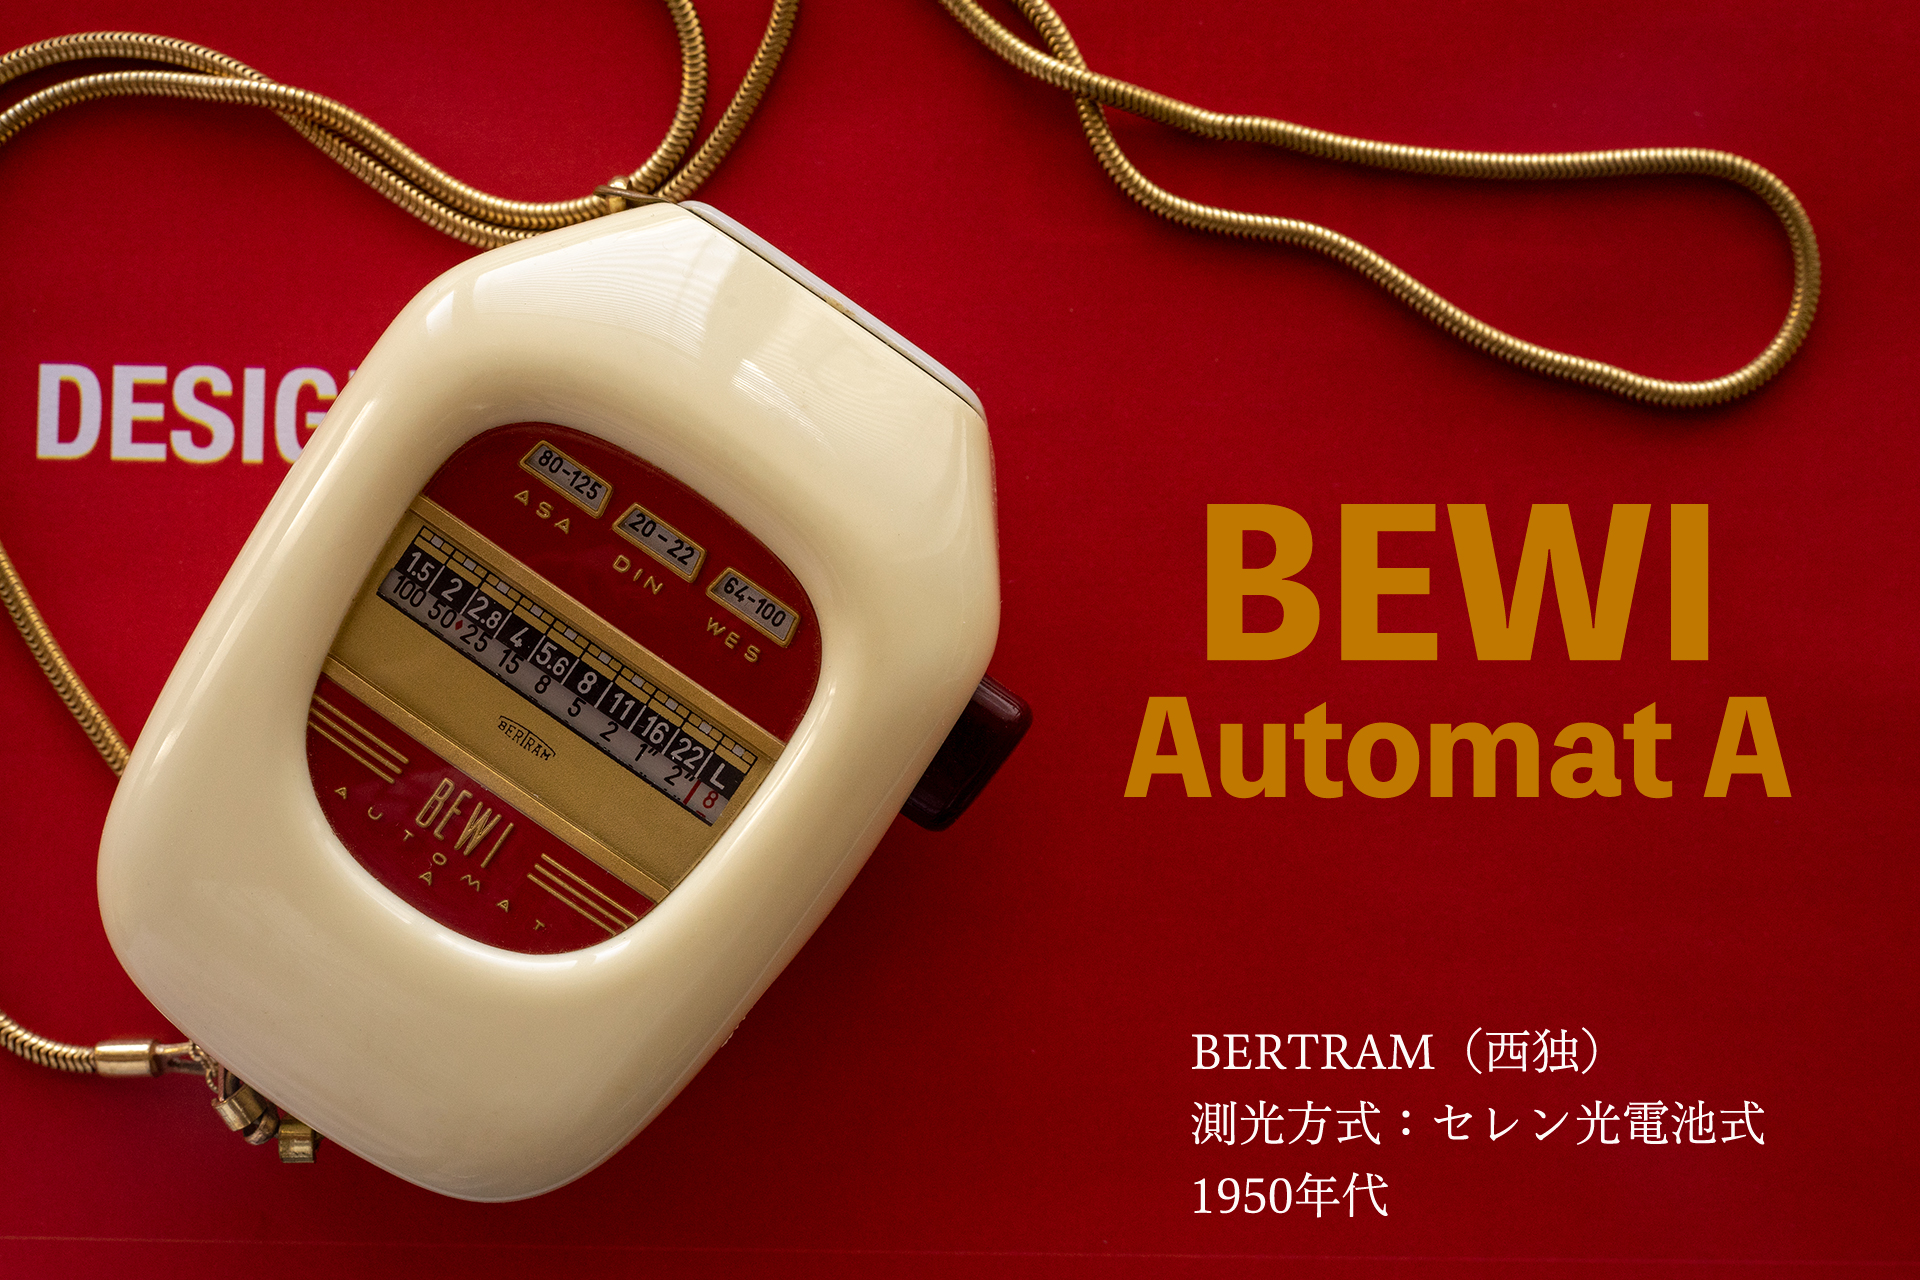 BEWI Automat A / Bertram（西独）